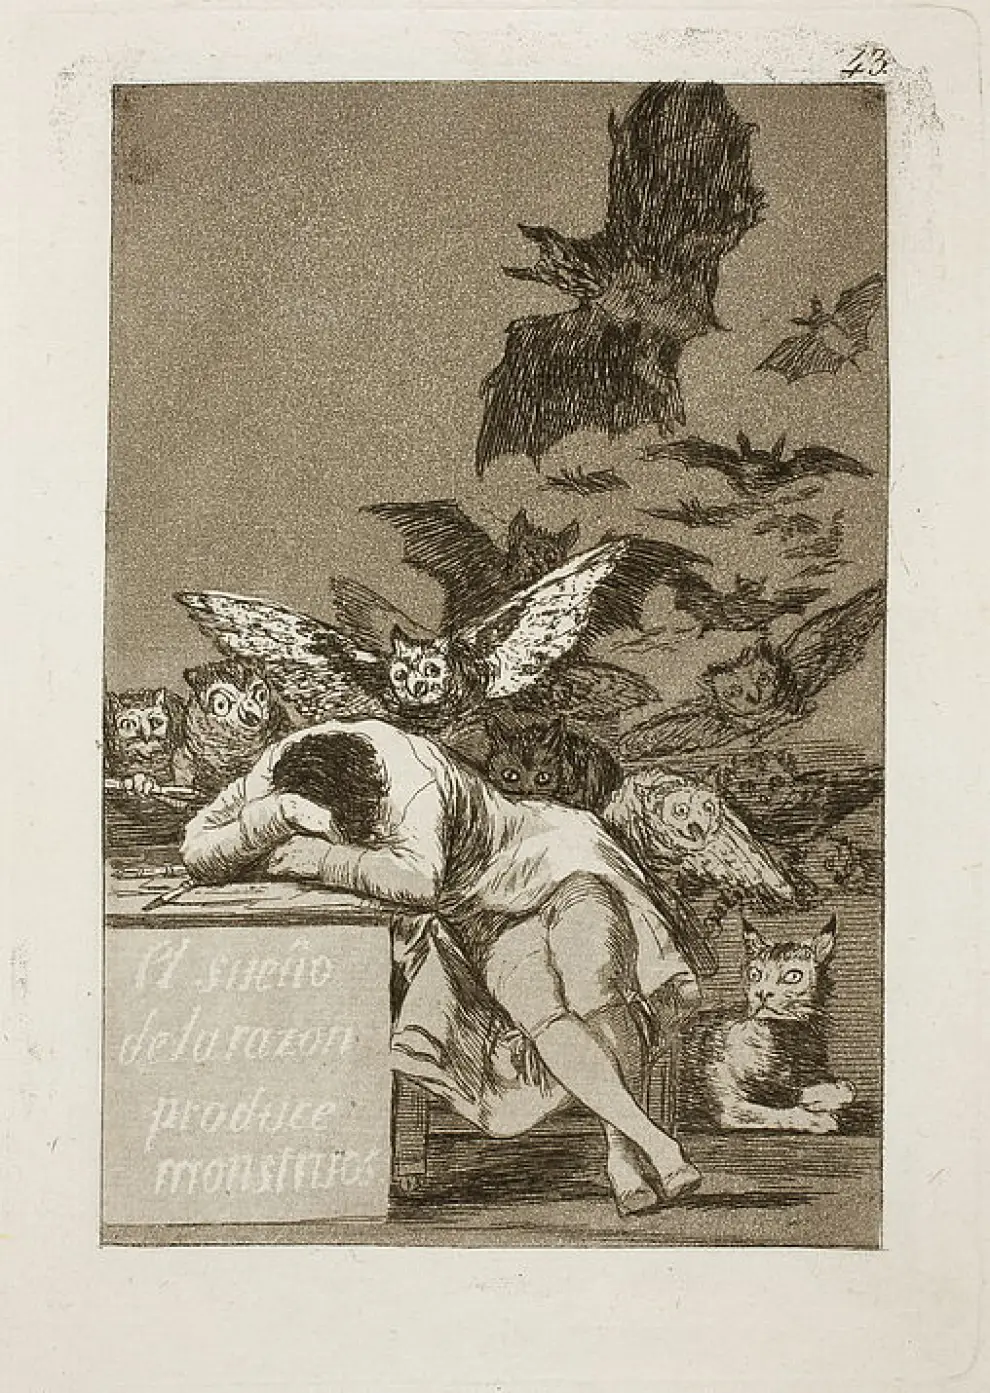 Goya en el Prado